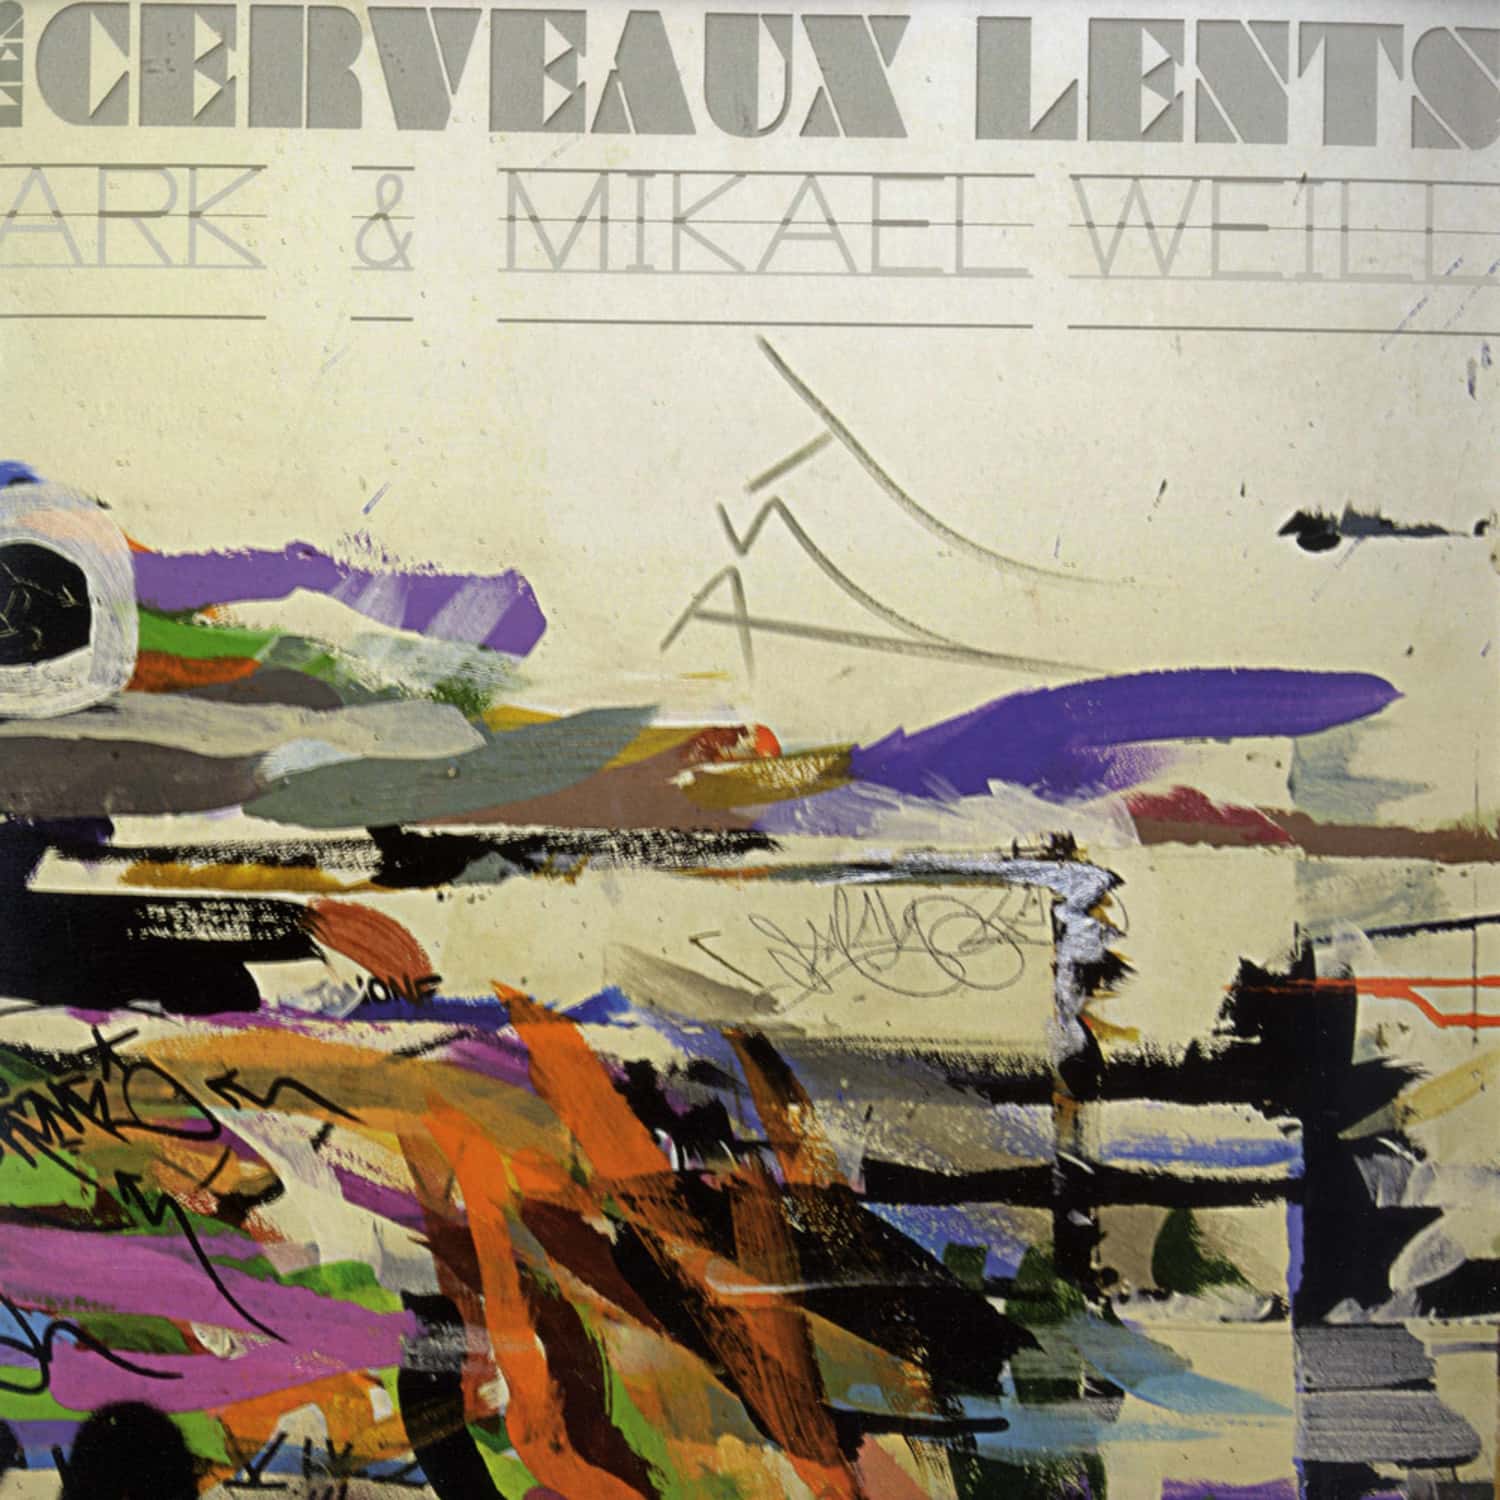 Ark & Mikael Weill - LES CERVEAUX LENTS